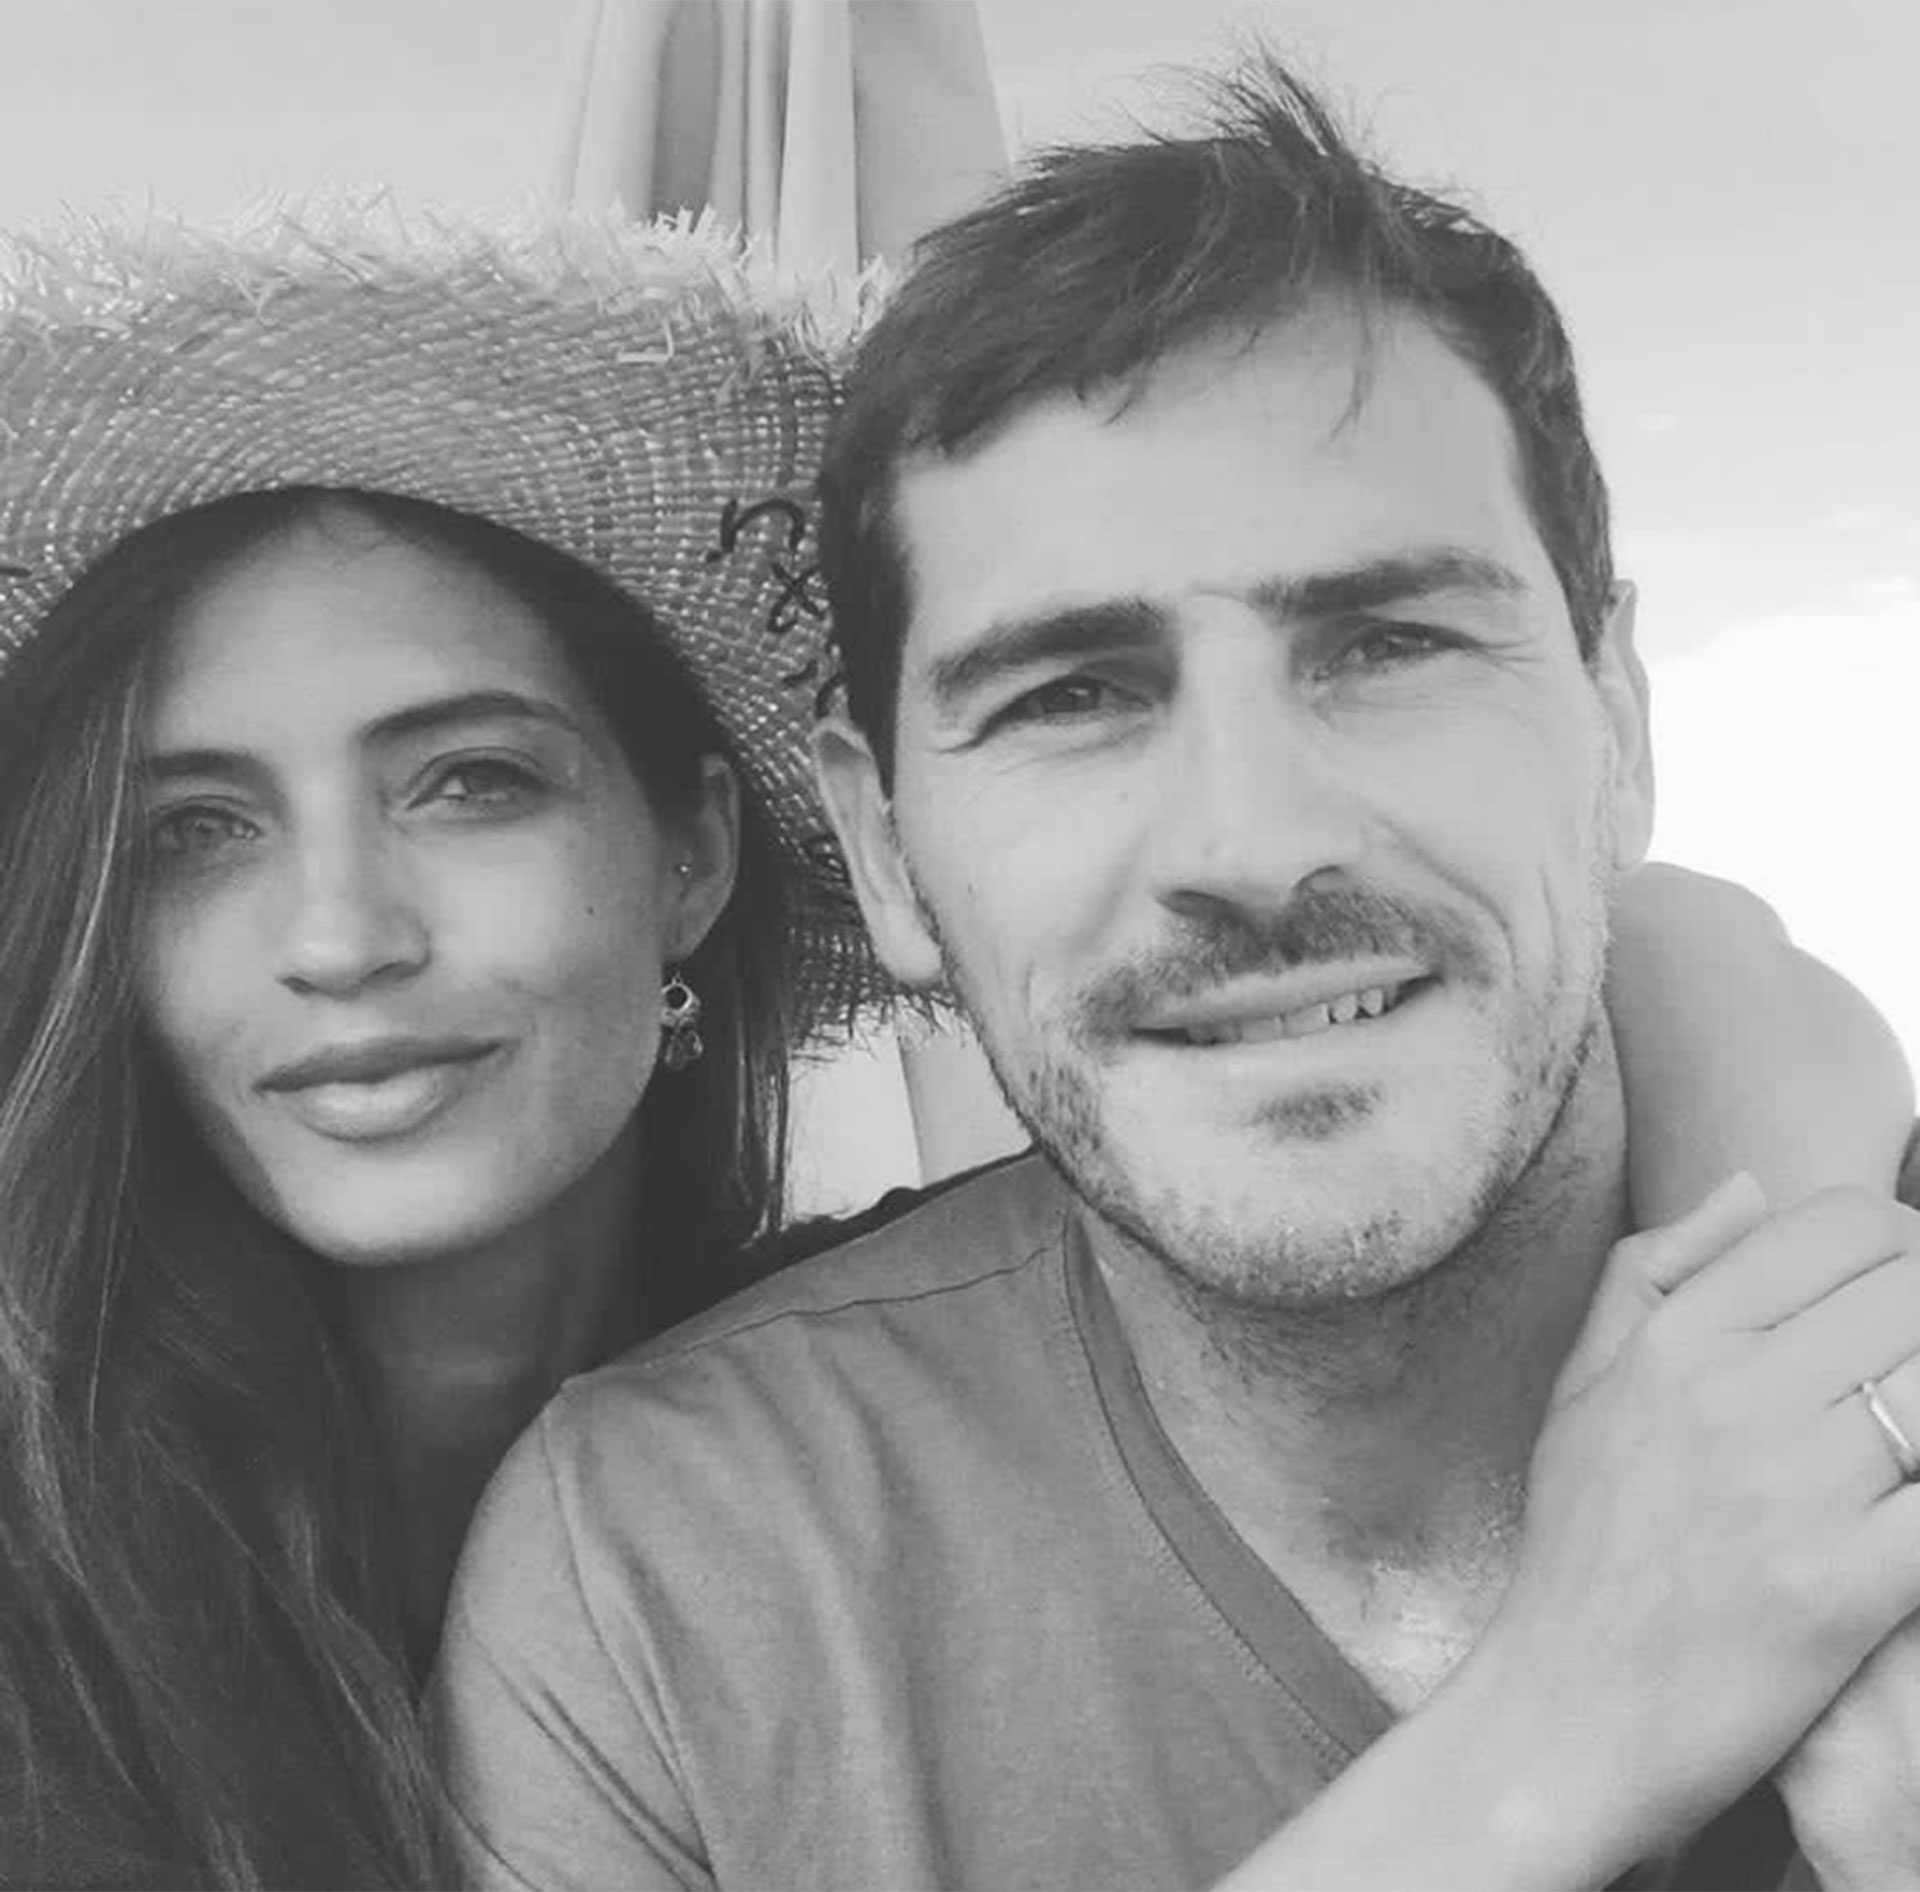 Sara Carbonero no se olvida de Iker Casillas: el mensaje que le dedica